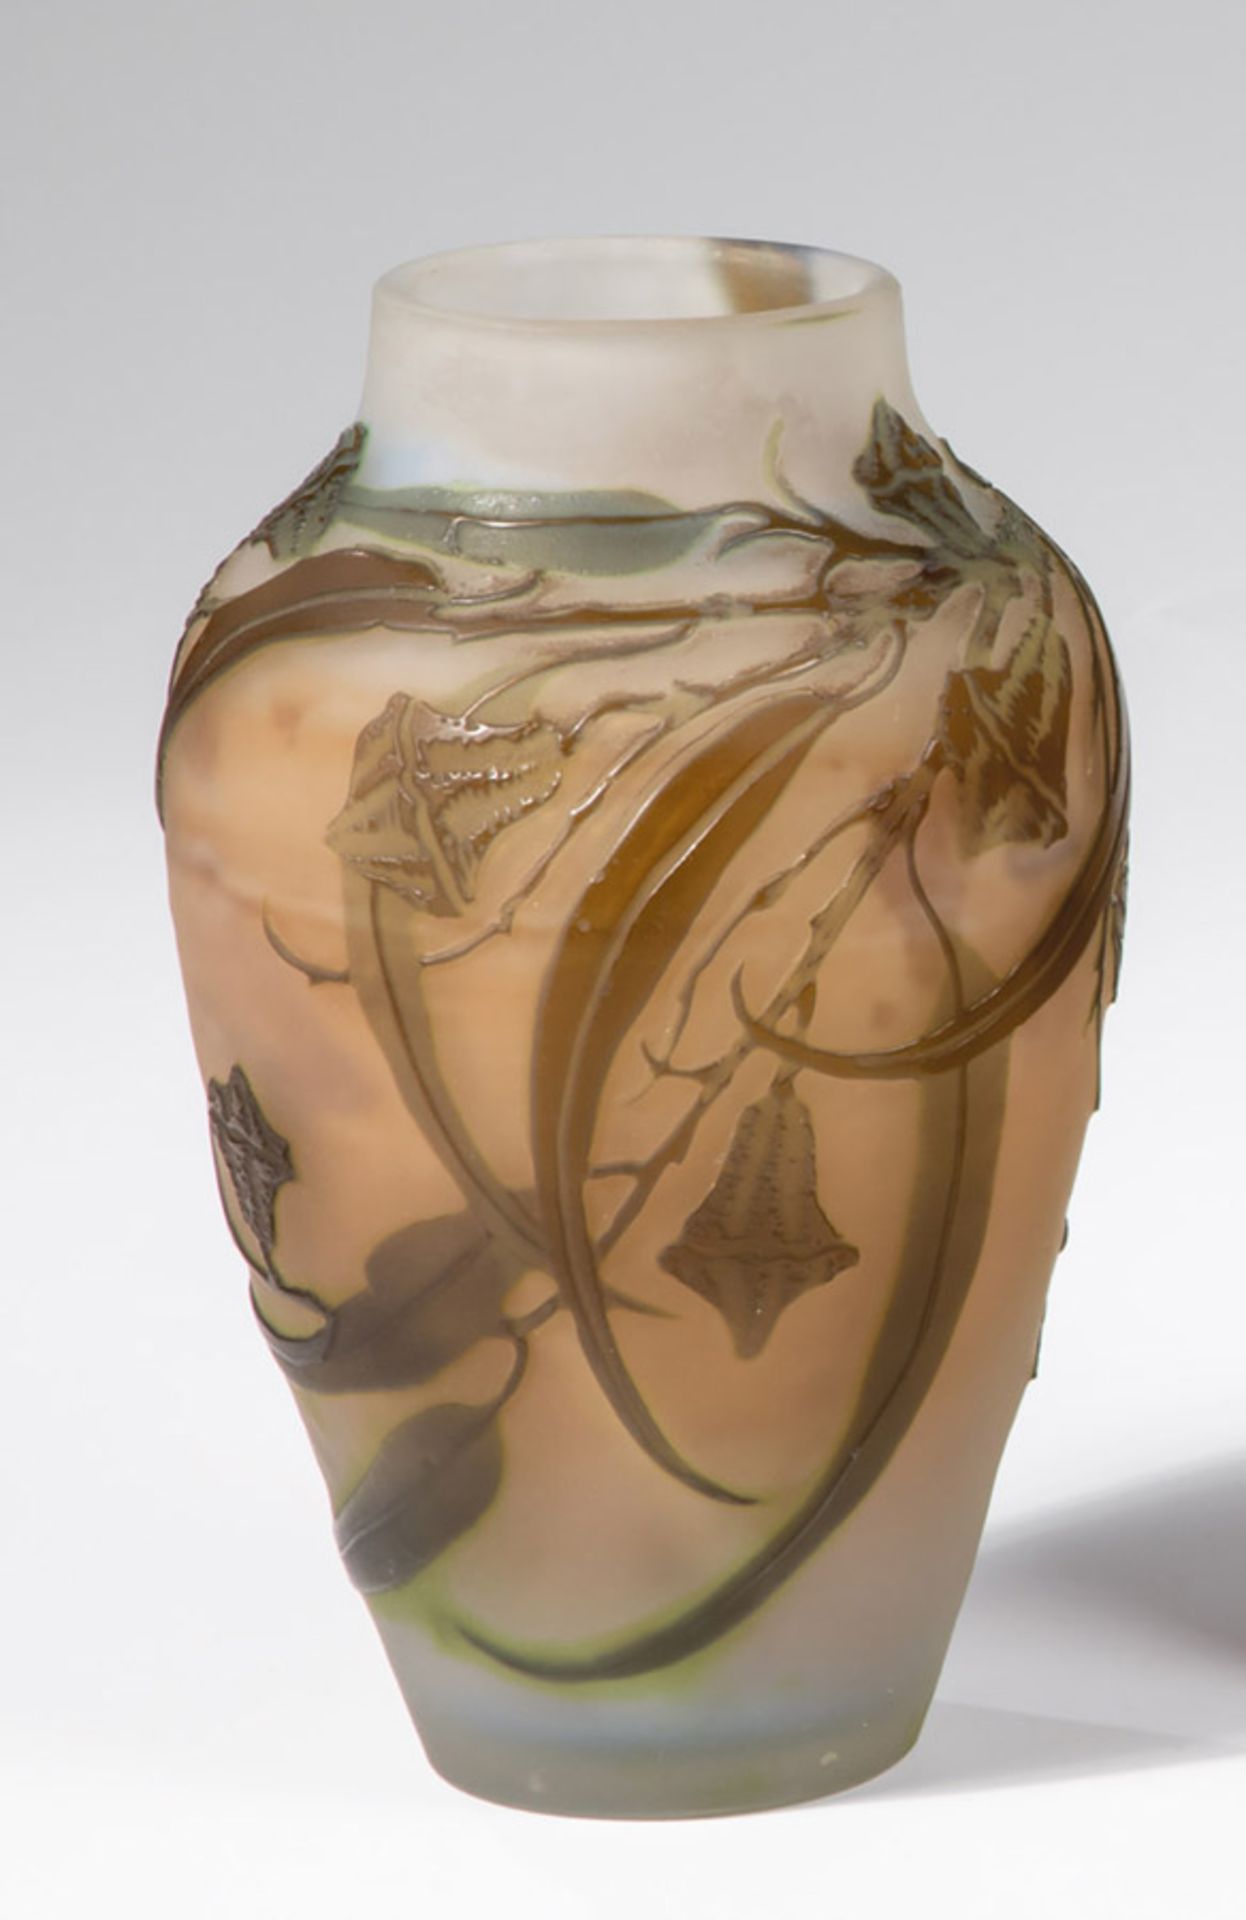 Vase mit EukalyptusEmile Gallé, Nancy, um 1906 - 1914 Farbloses Glas, grün und braun überfangen.